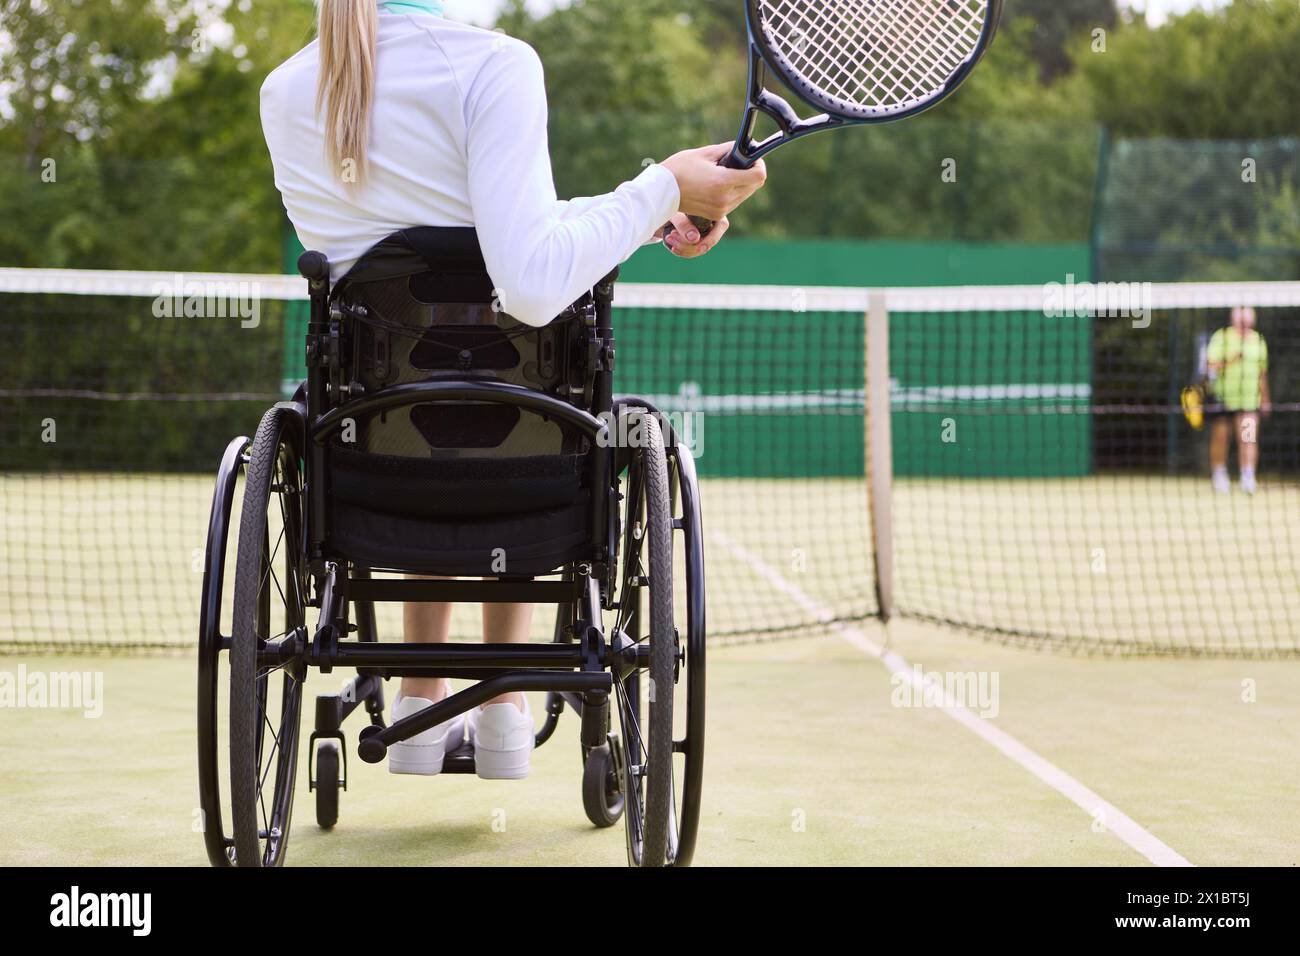 Une image inspirante d'une athlète handicapée jouant au tennis sur un court extérieur, faisant preuve de détermination et d'habileté. Banque D'Images